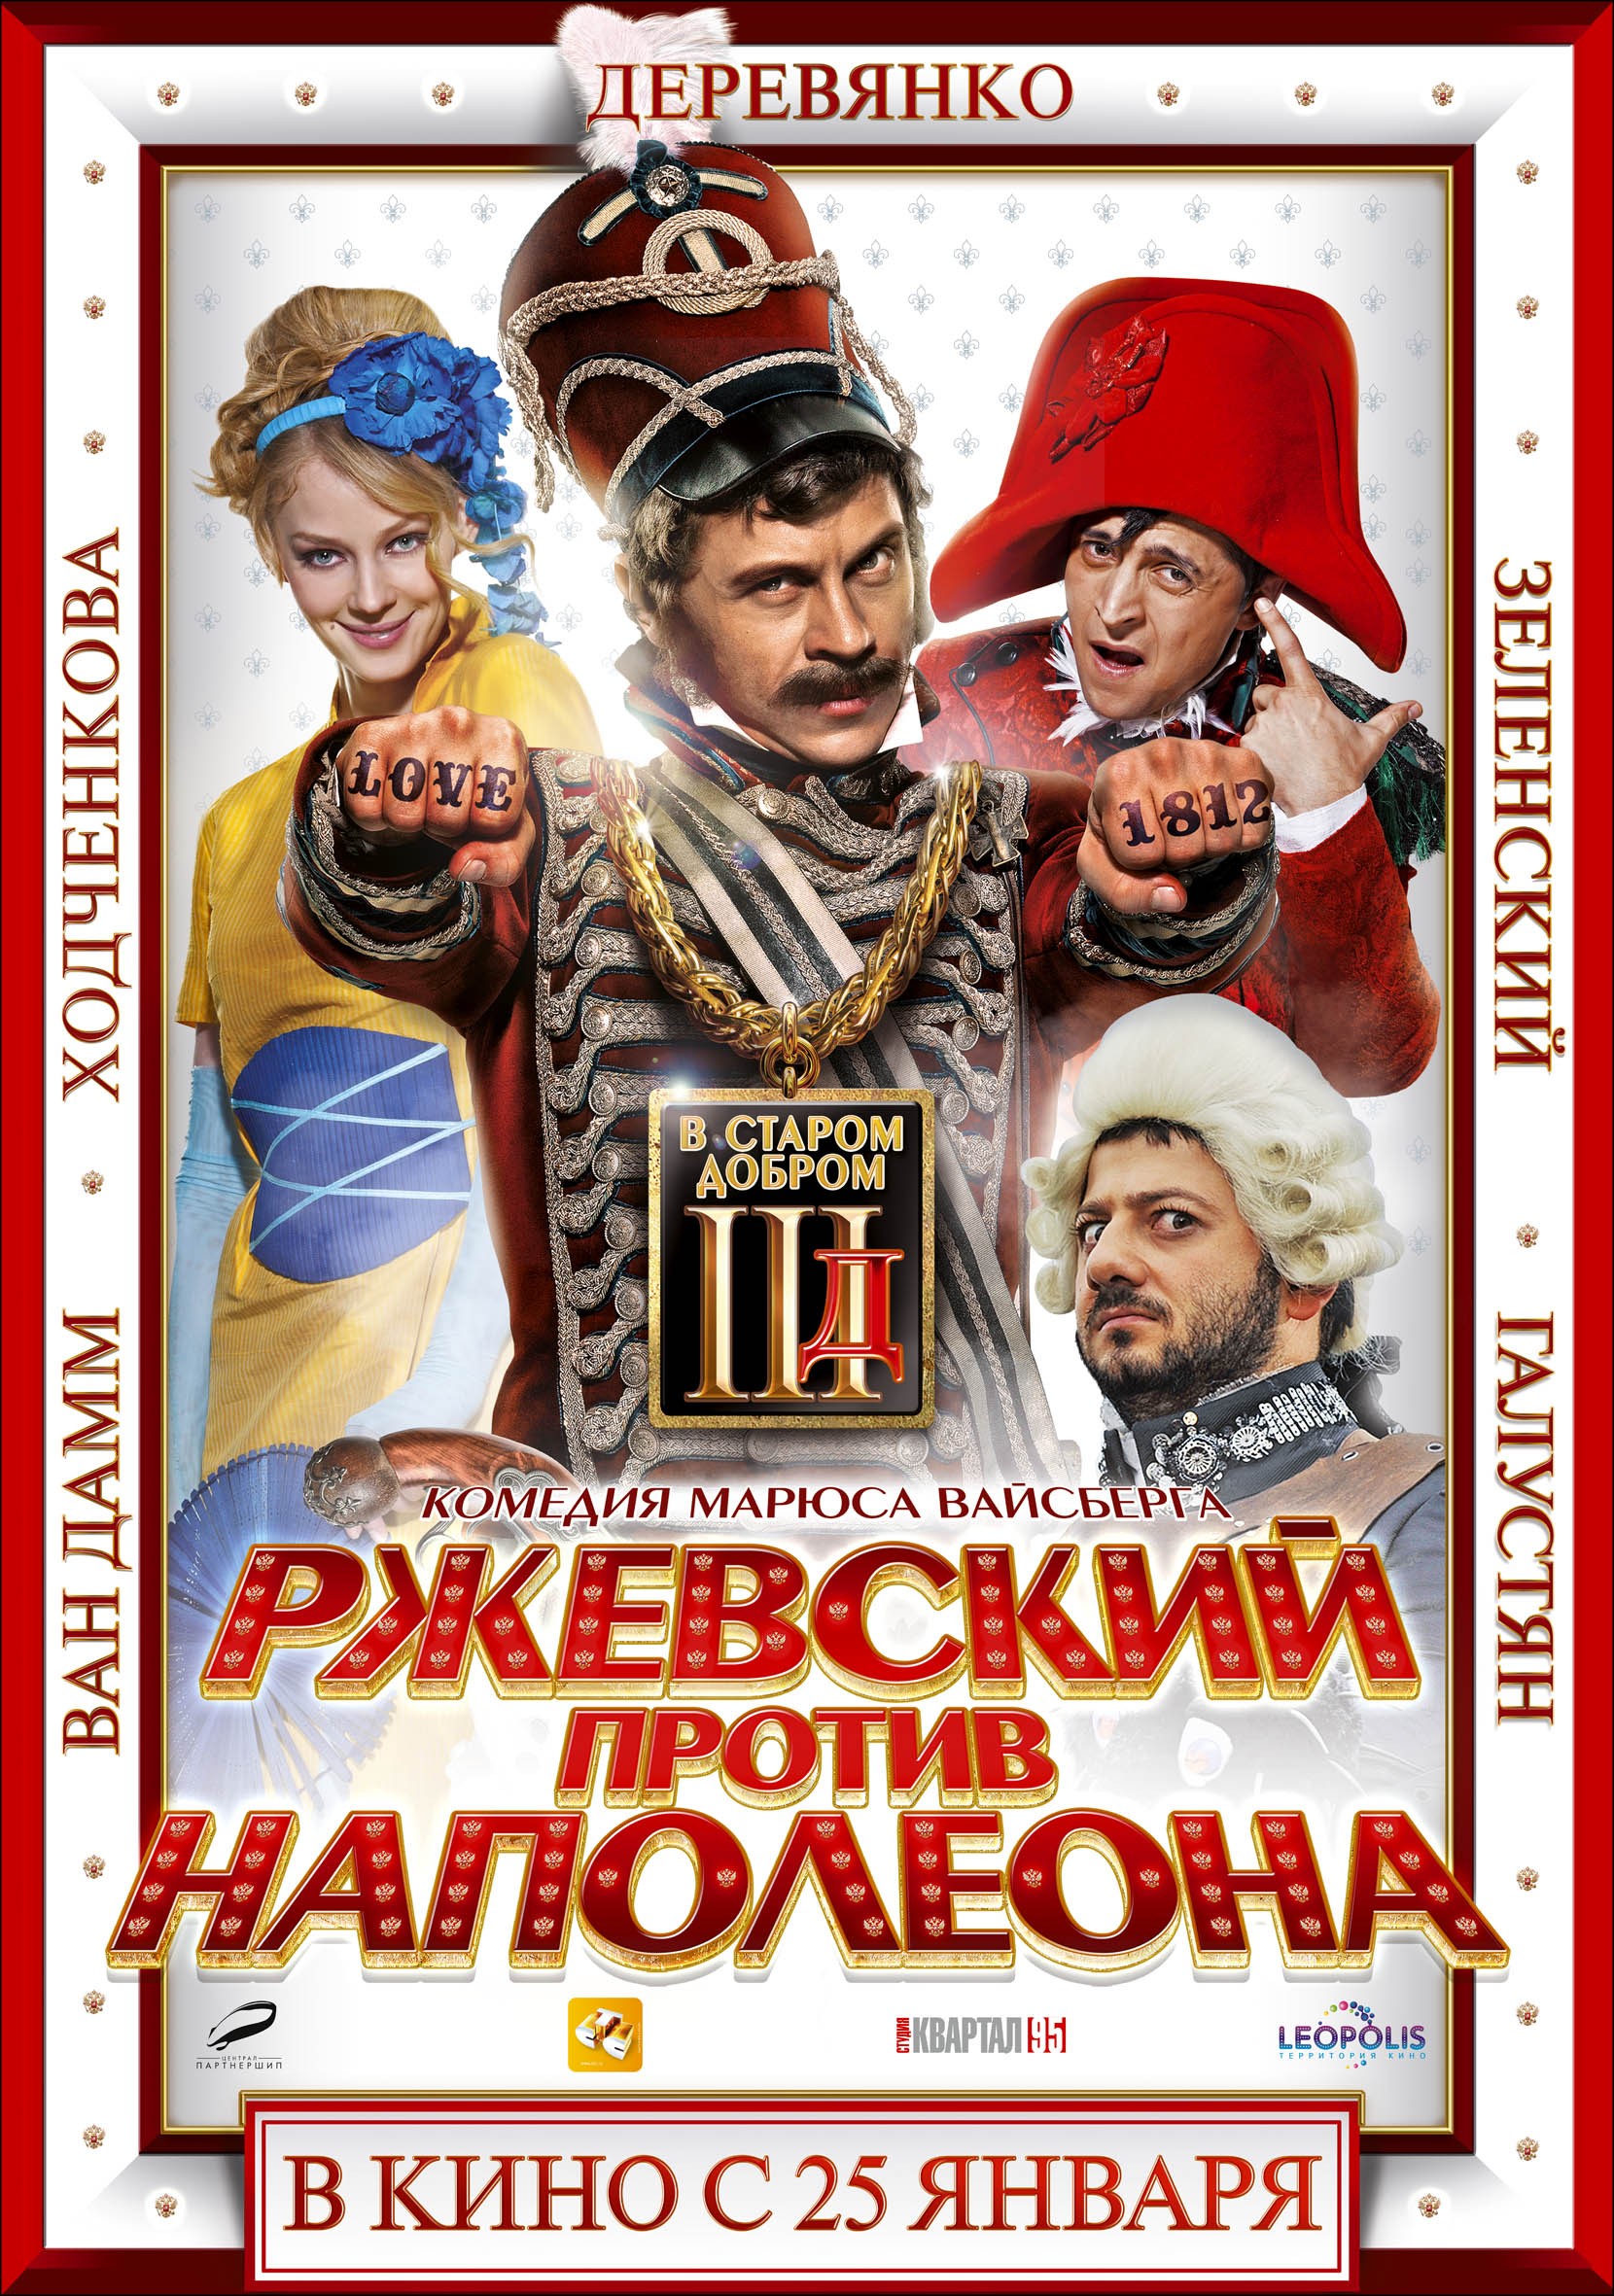 Mega Sized Movie Poster Image for Rzhevskiy protiv Napoleona (#1 of 2)